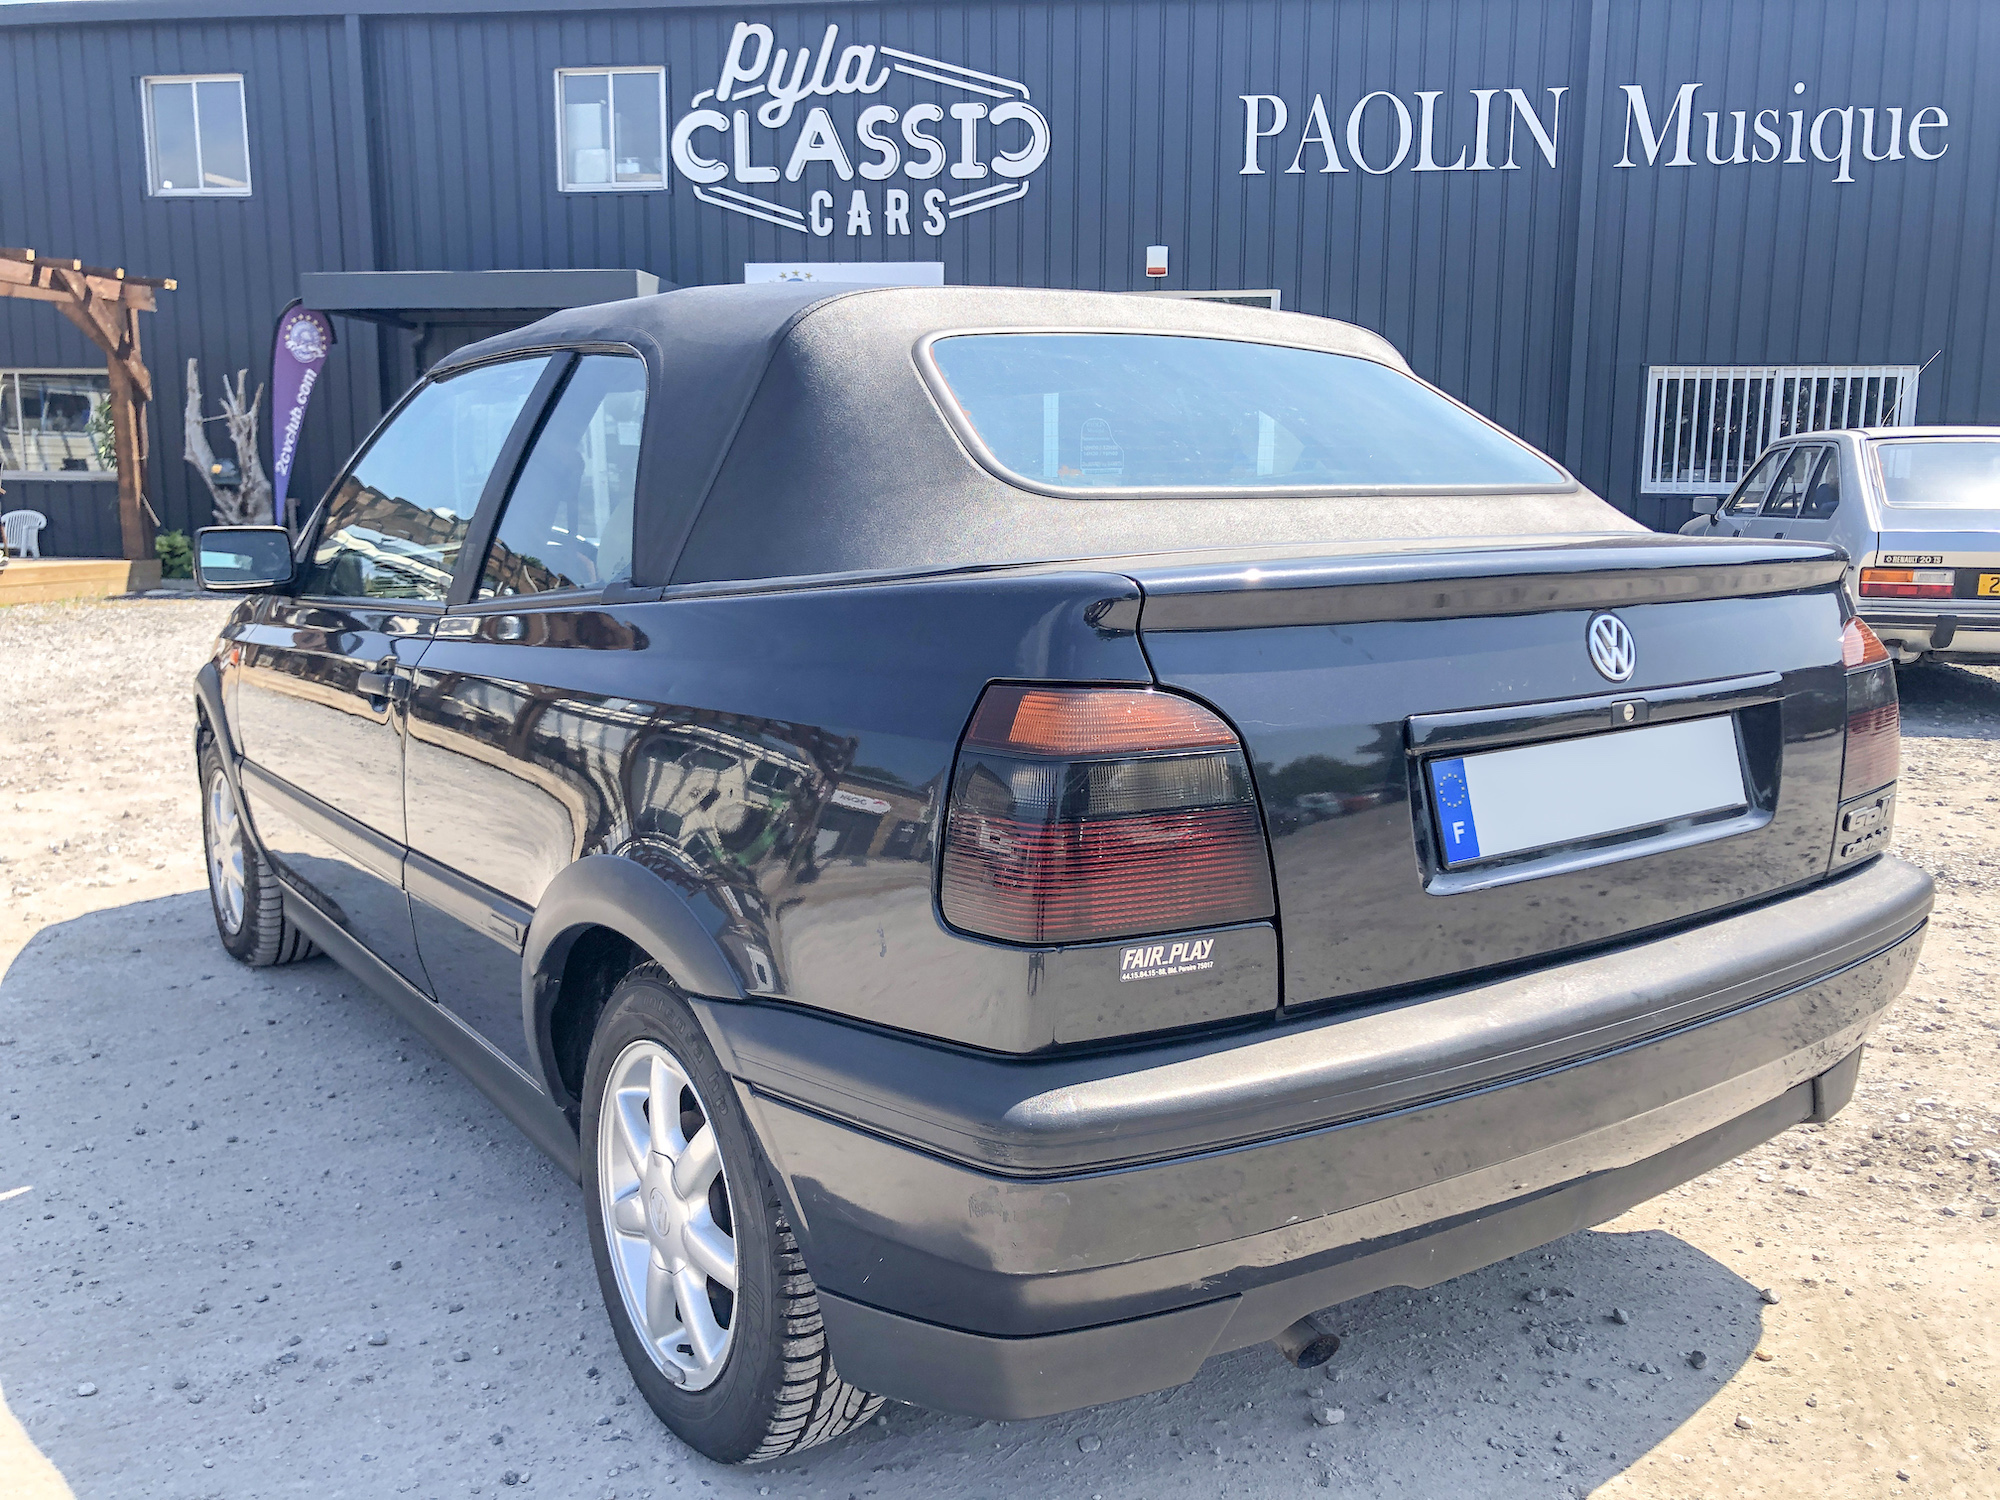 A vendre Volkswagen Golf 3 cabriolet 1996 - intérieur cuir et boite auto